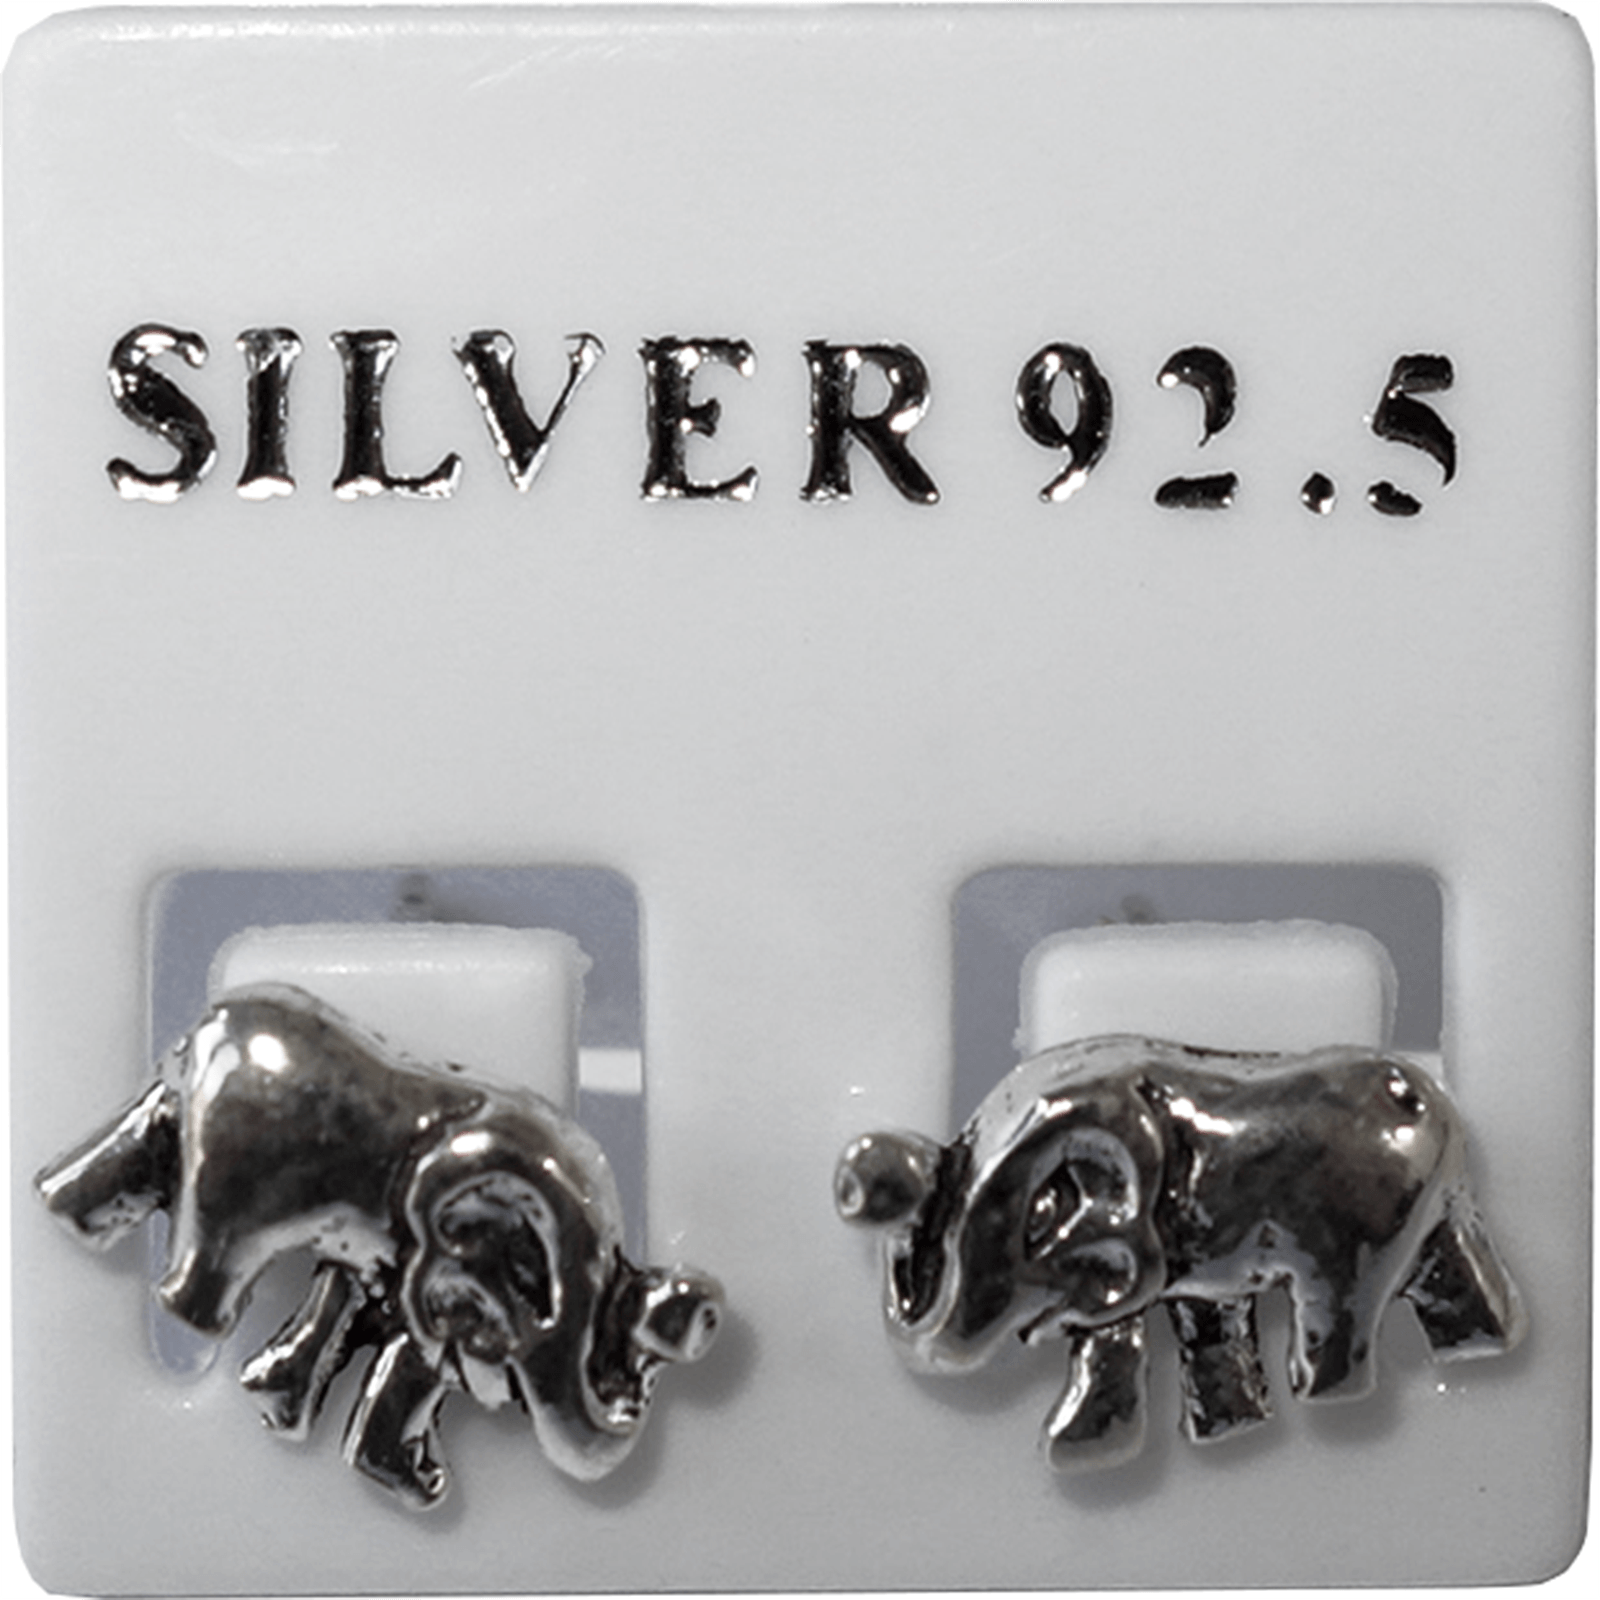 Pair of 925 Sterling Silver Elephant Stud Earrings Ear Studs Jewellery Jewelry